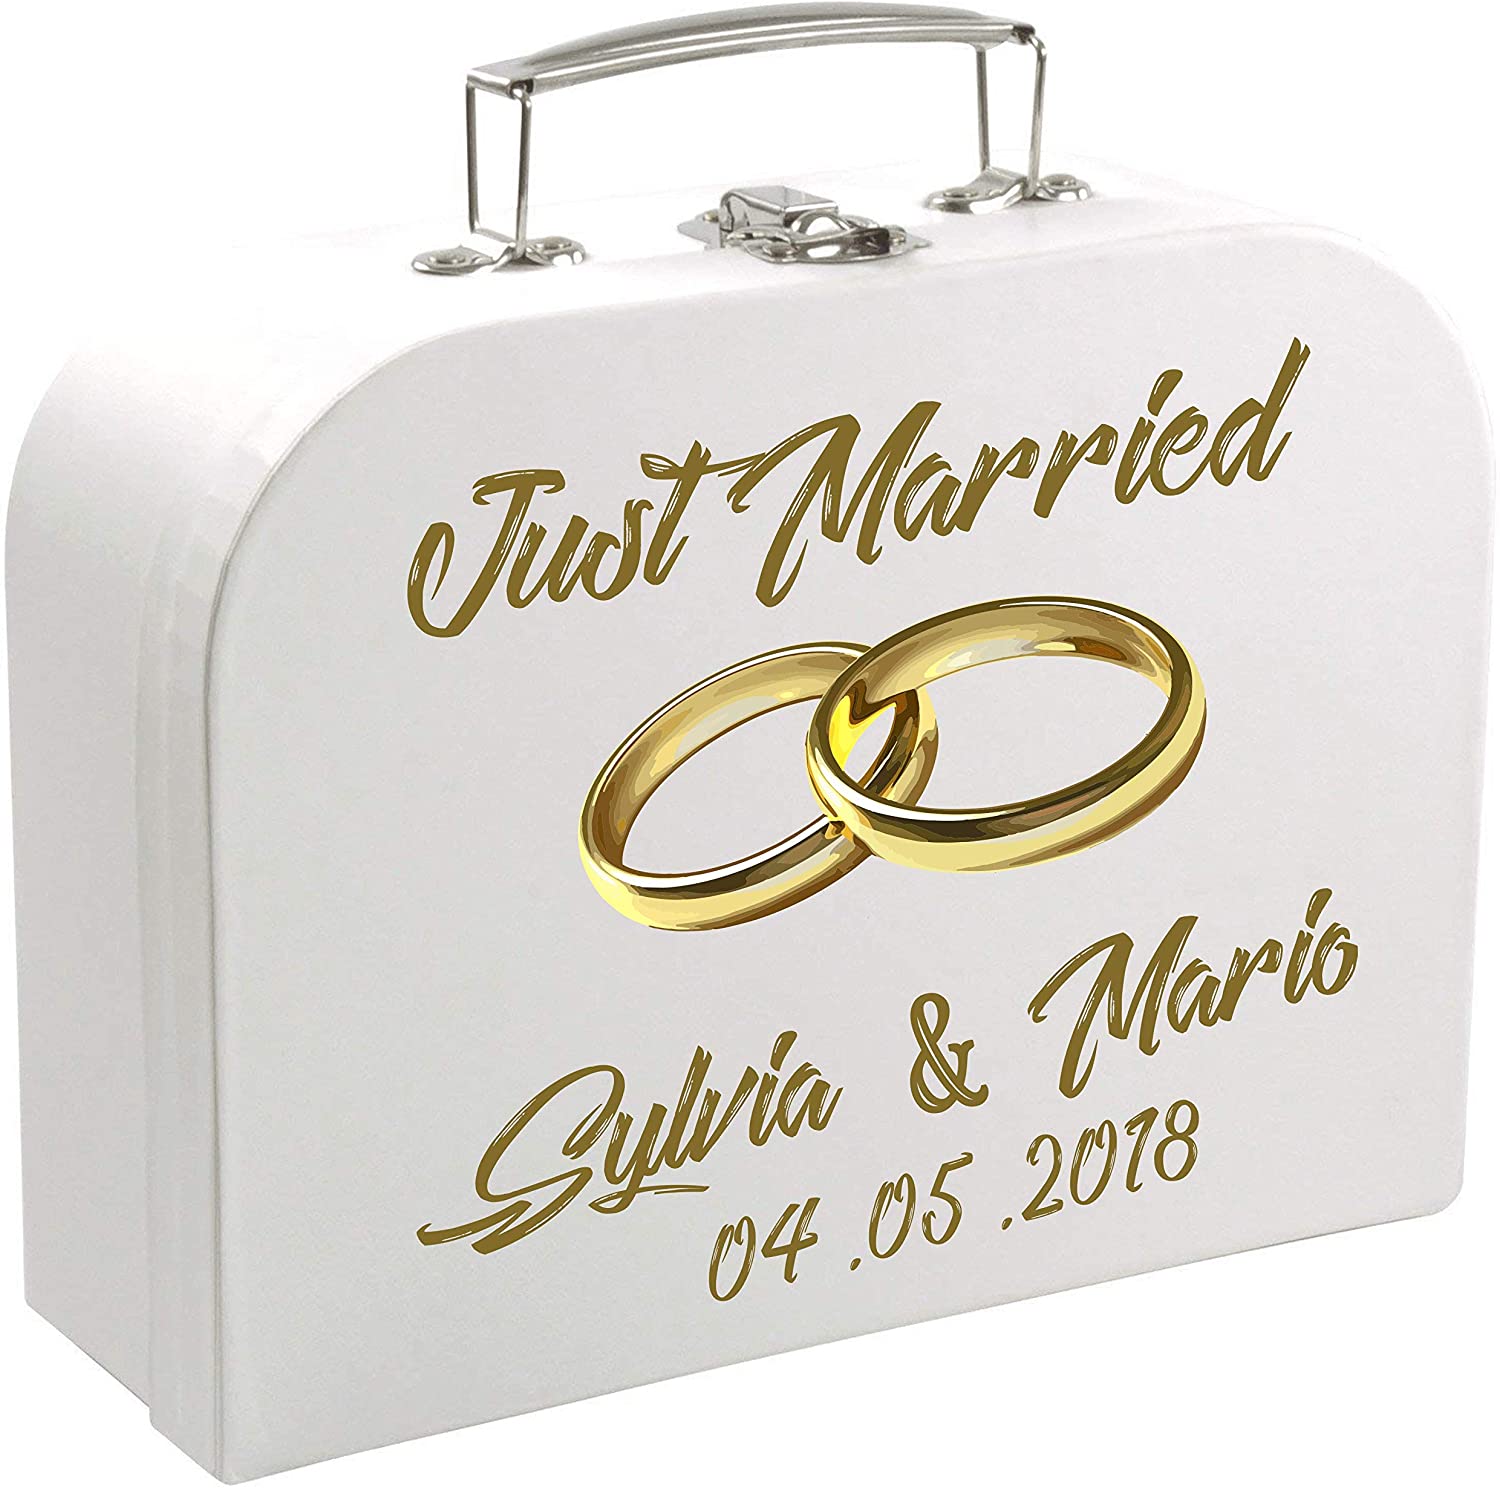 Hochzeits oder Jubiläumskoffer - Personifizierter Pappkoffer zur Hochzeit mit Namen & Datum